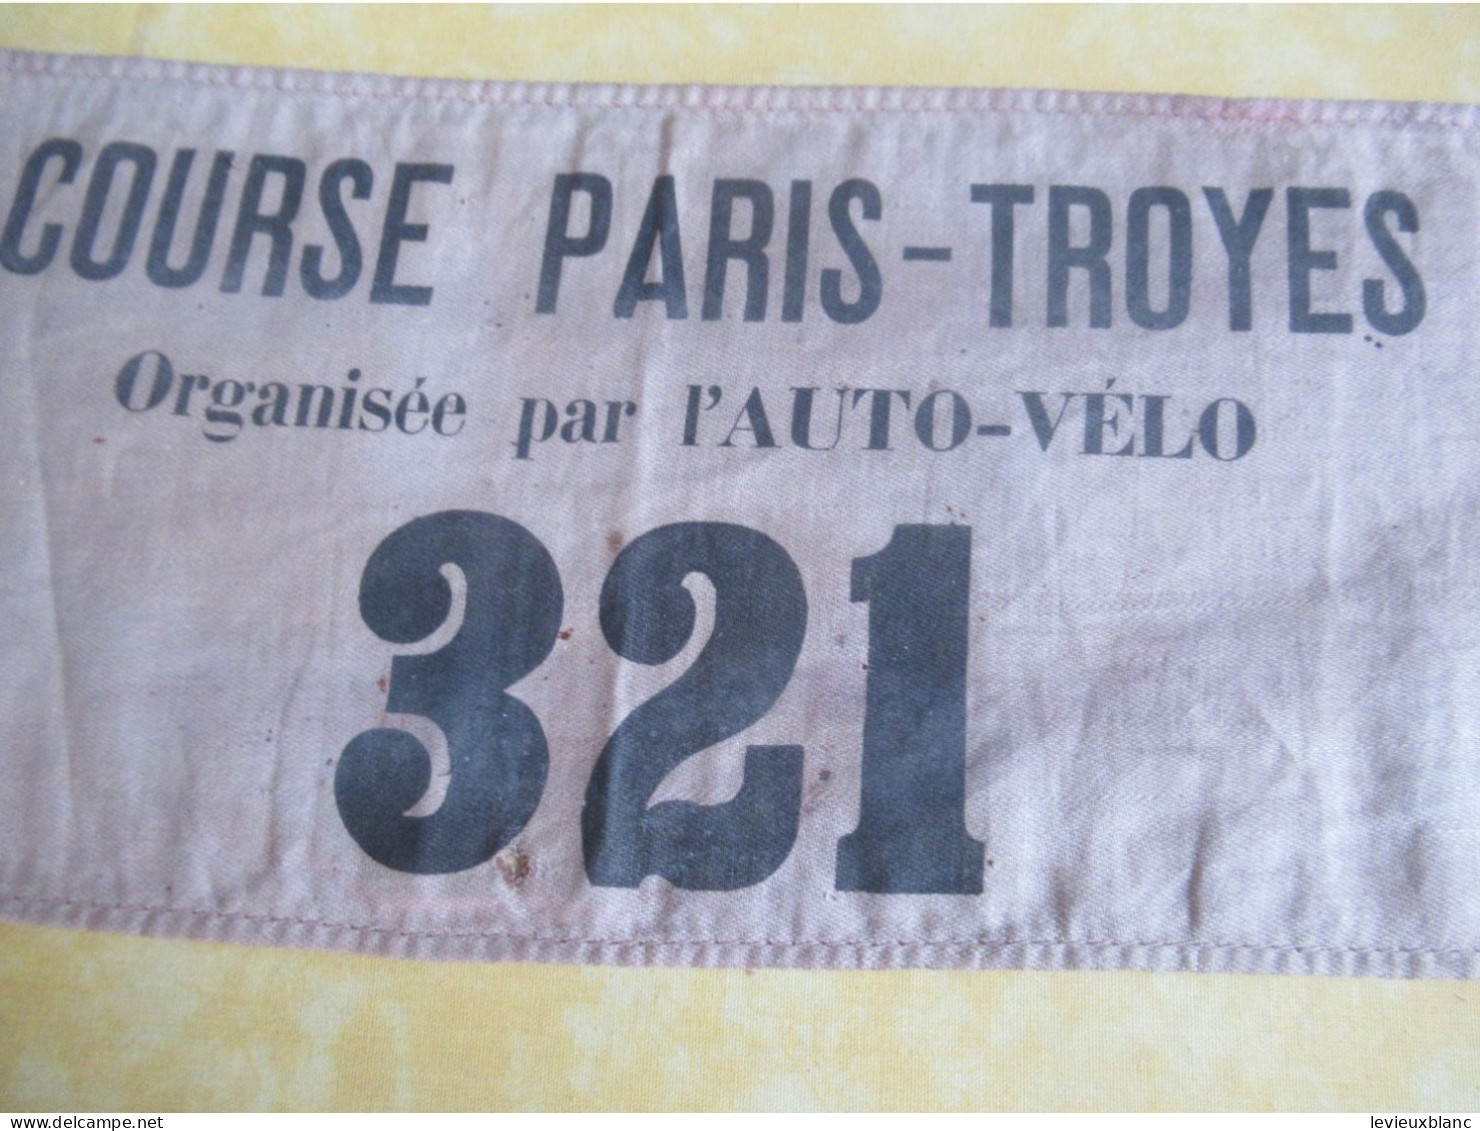 Course Cycliste Ancienne/3 Brassards D'Organisateur/Course Paris-Troyes/Organisée Par L'AUTO-VELO/entre 1900-1902  AC207 - Cycling